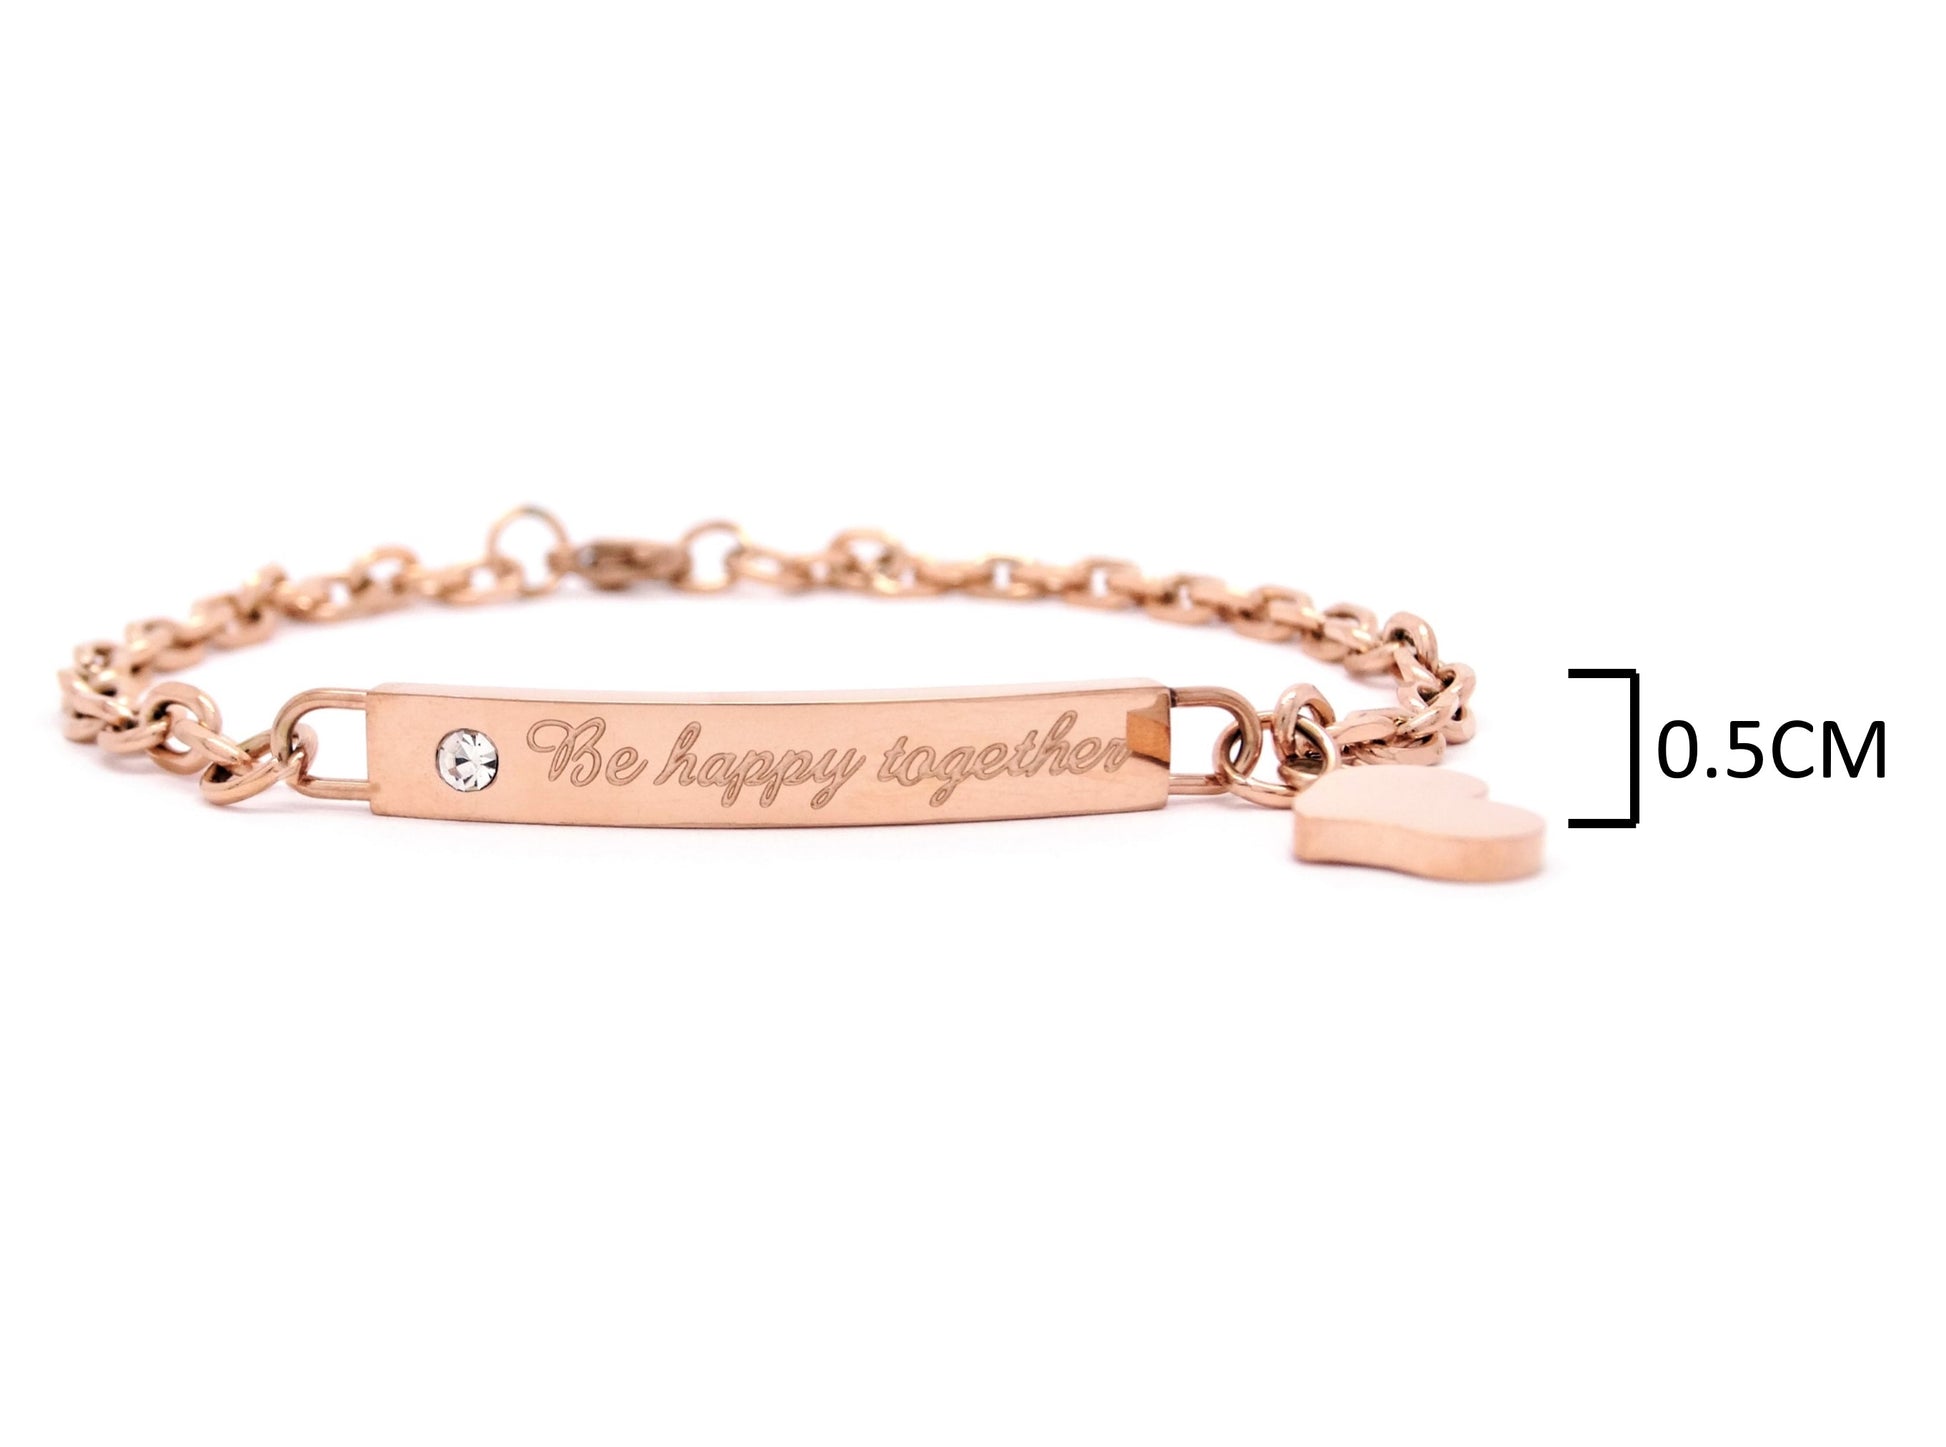 Be happy together engraved rose gold bracelet MEASUREMENT